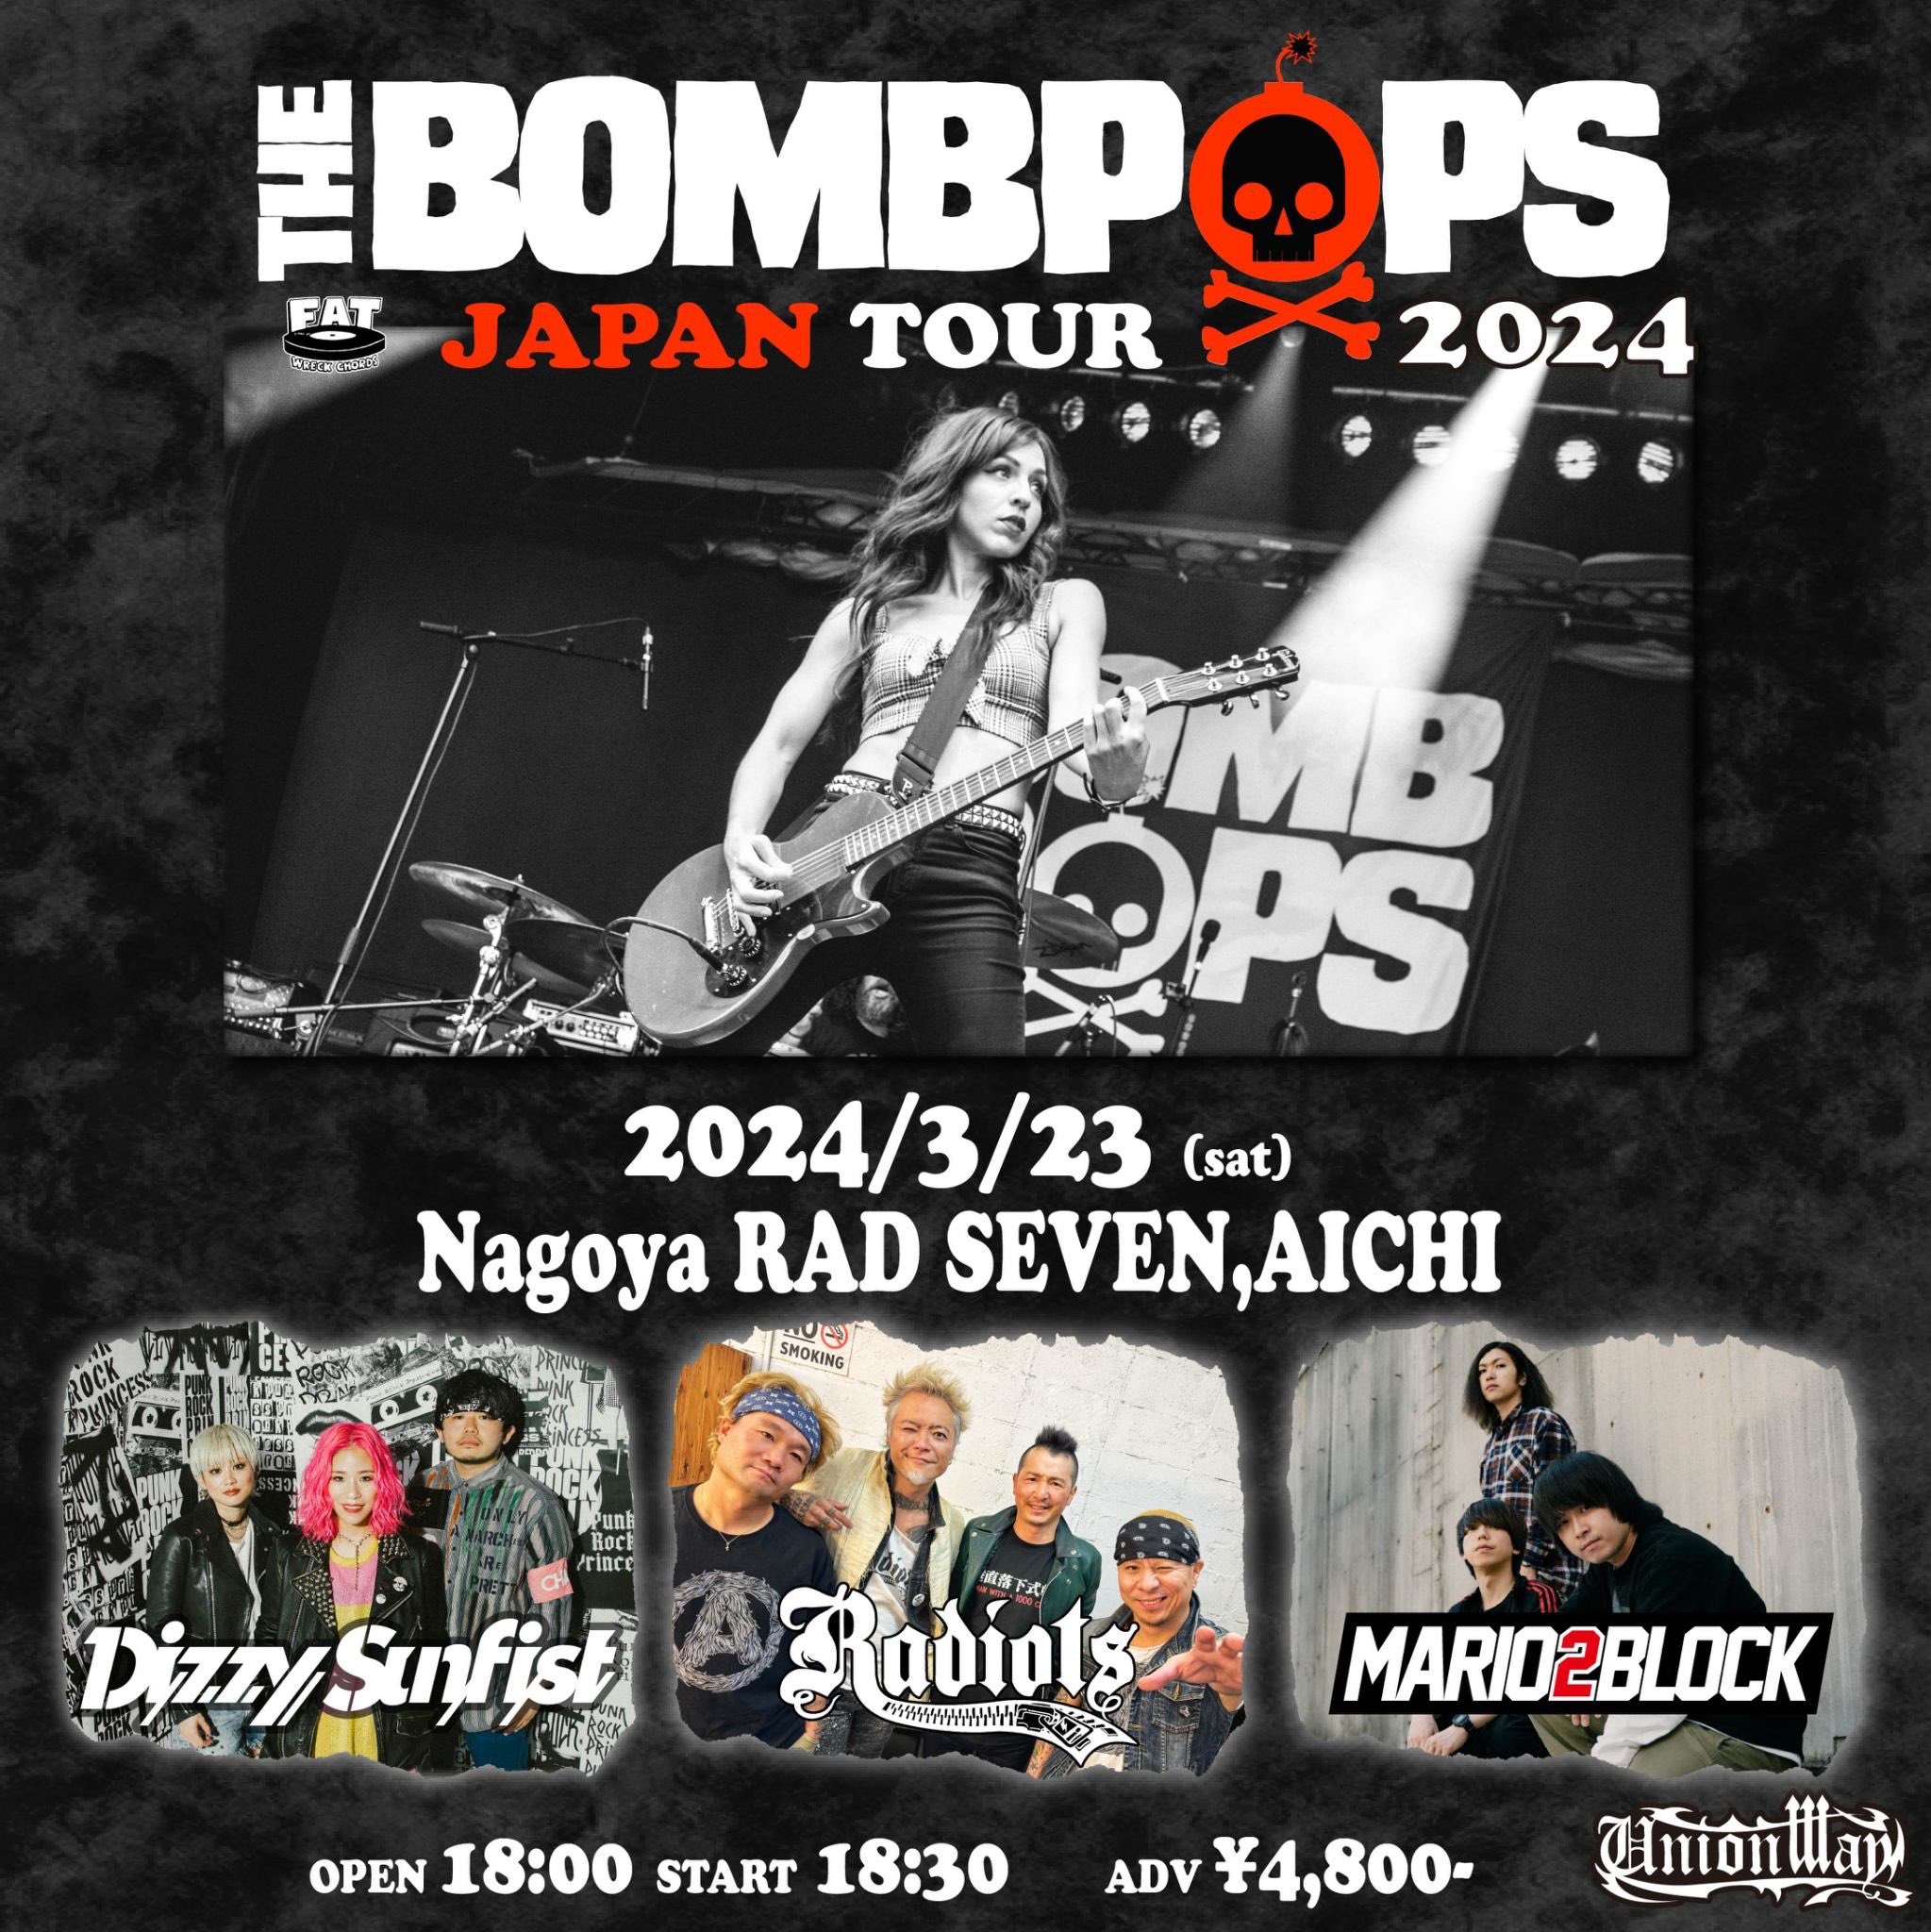 THE BOMBPOPS JAPAN TOUR 2024